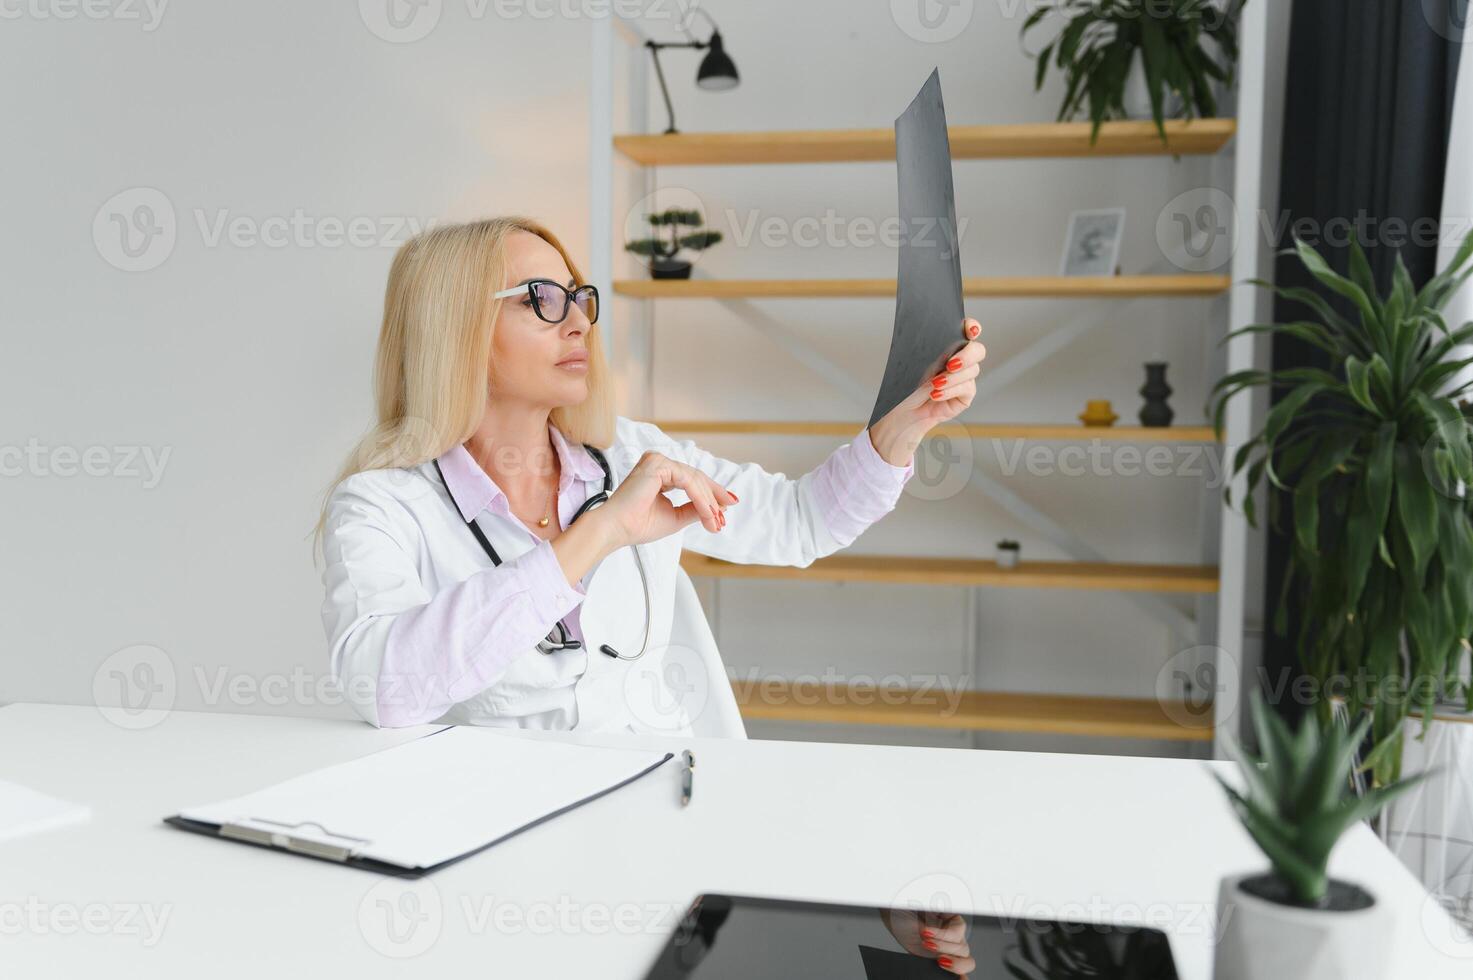 retrato tiro do meio envelhecido fêmea médico sentado às escrivaninha e trabalhando dentro médico escritório foto